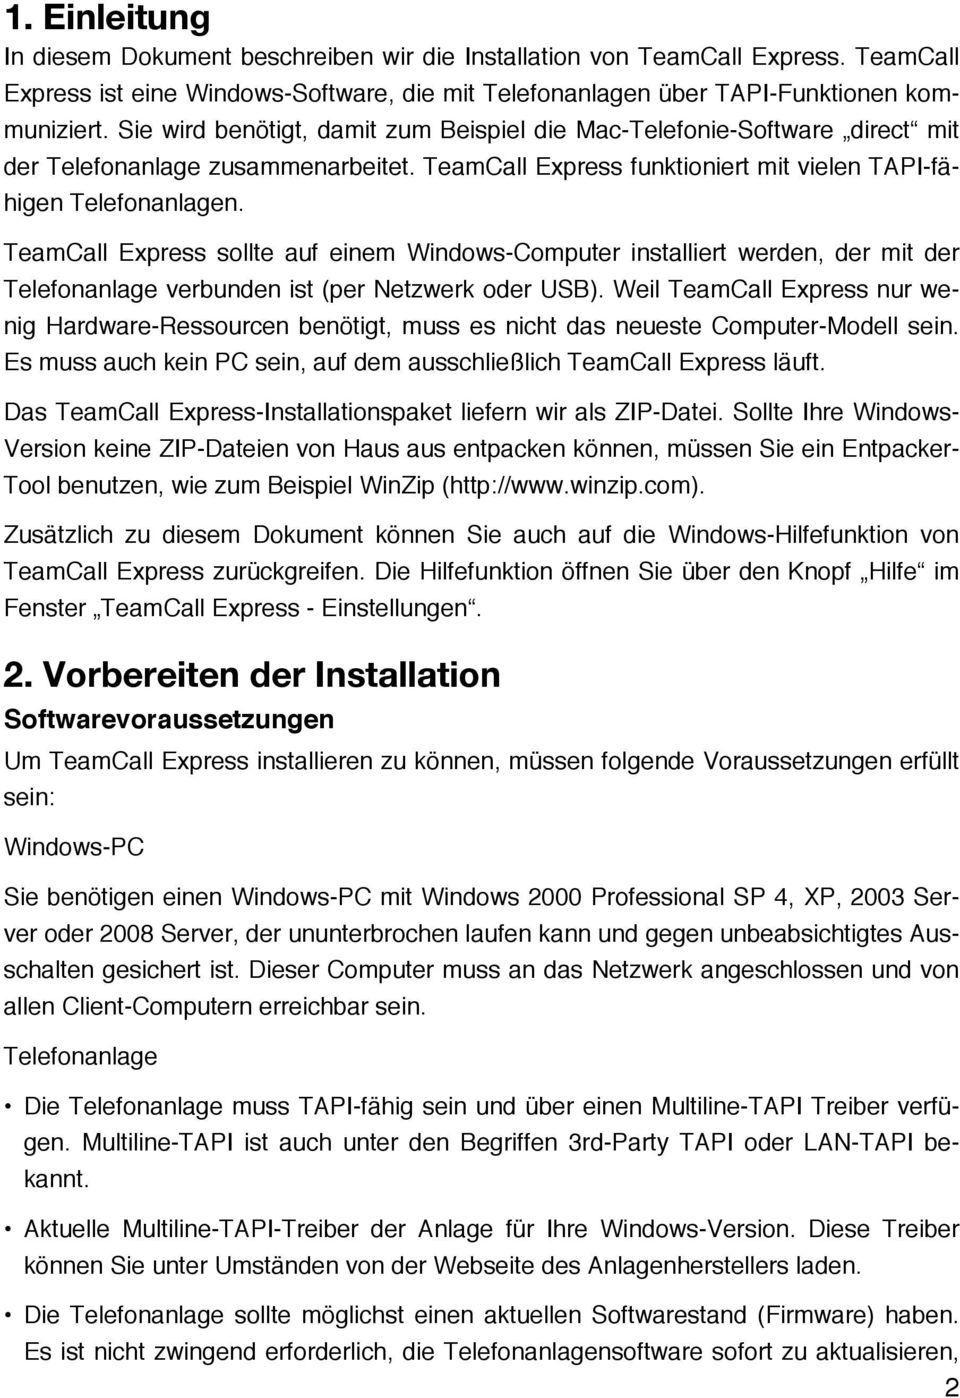 TeamCall Express sollte auf einem Windows-Computer installiert werden, der mit der Telefonanlage verbunden ist (per Netzwerk oder USB).